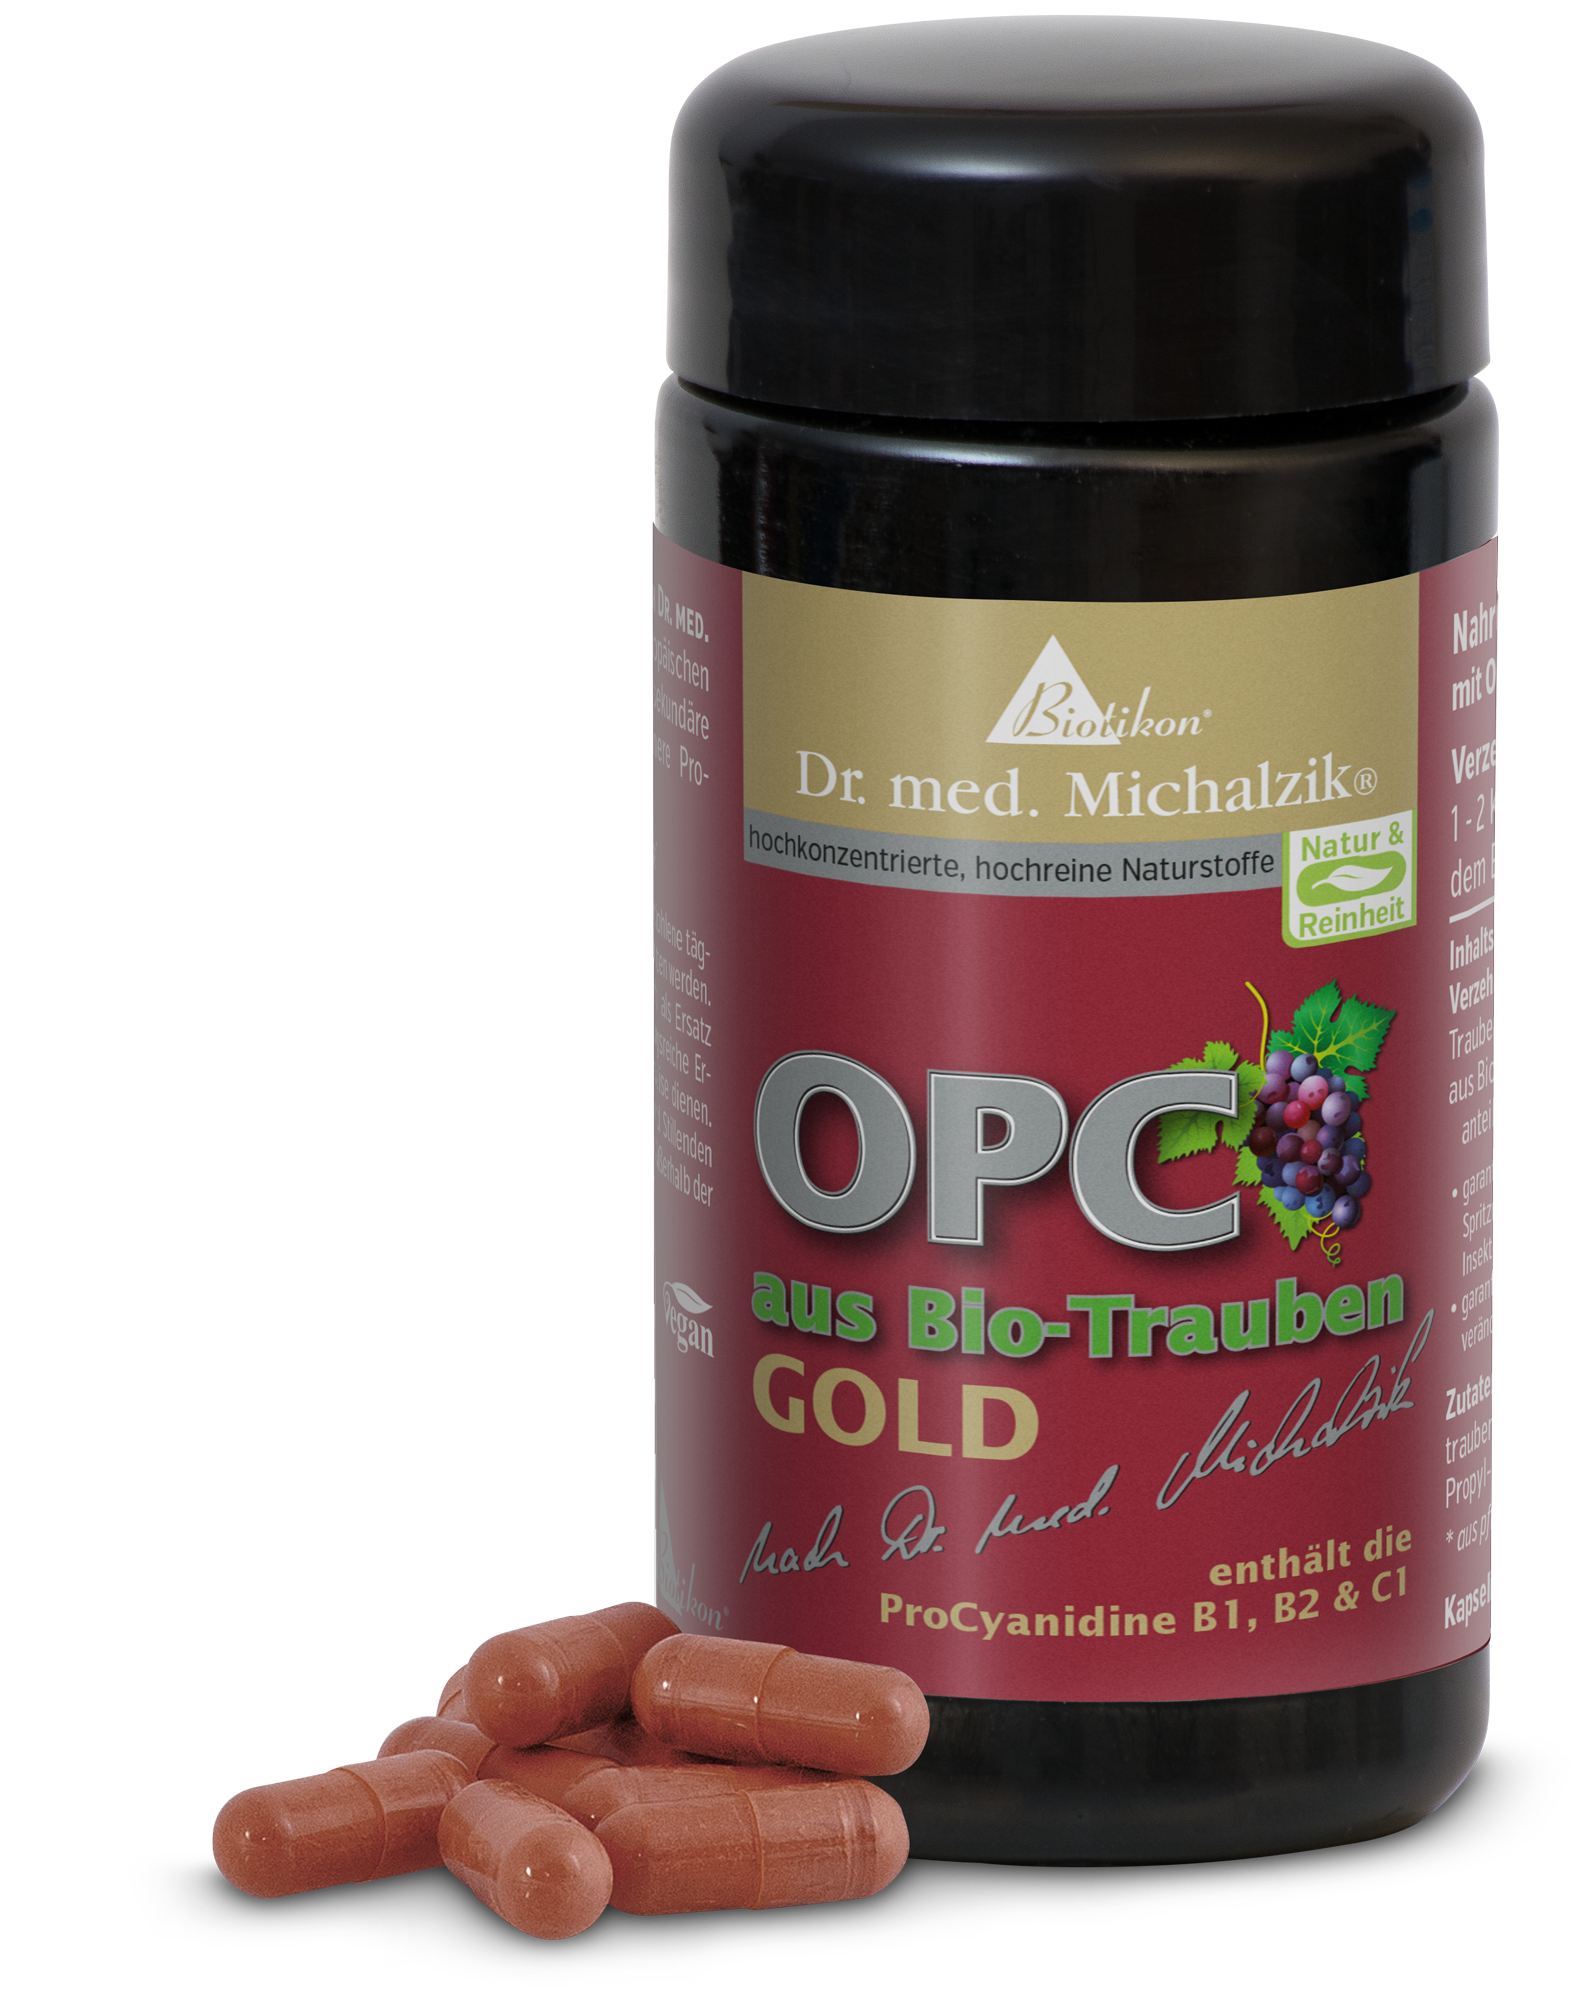 OPC aus Biotrauben GOLD